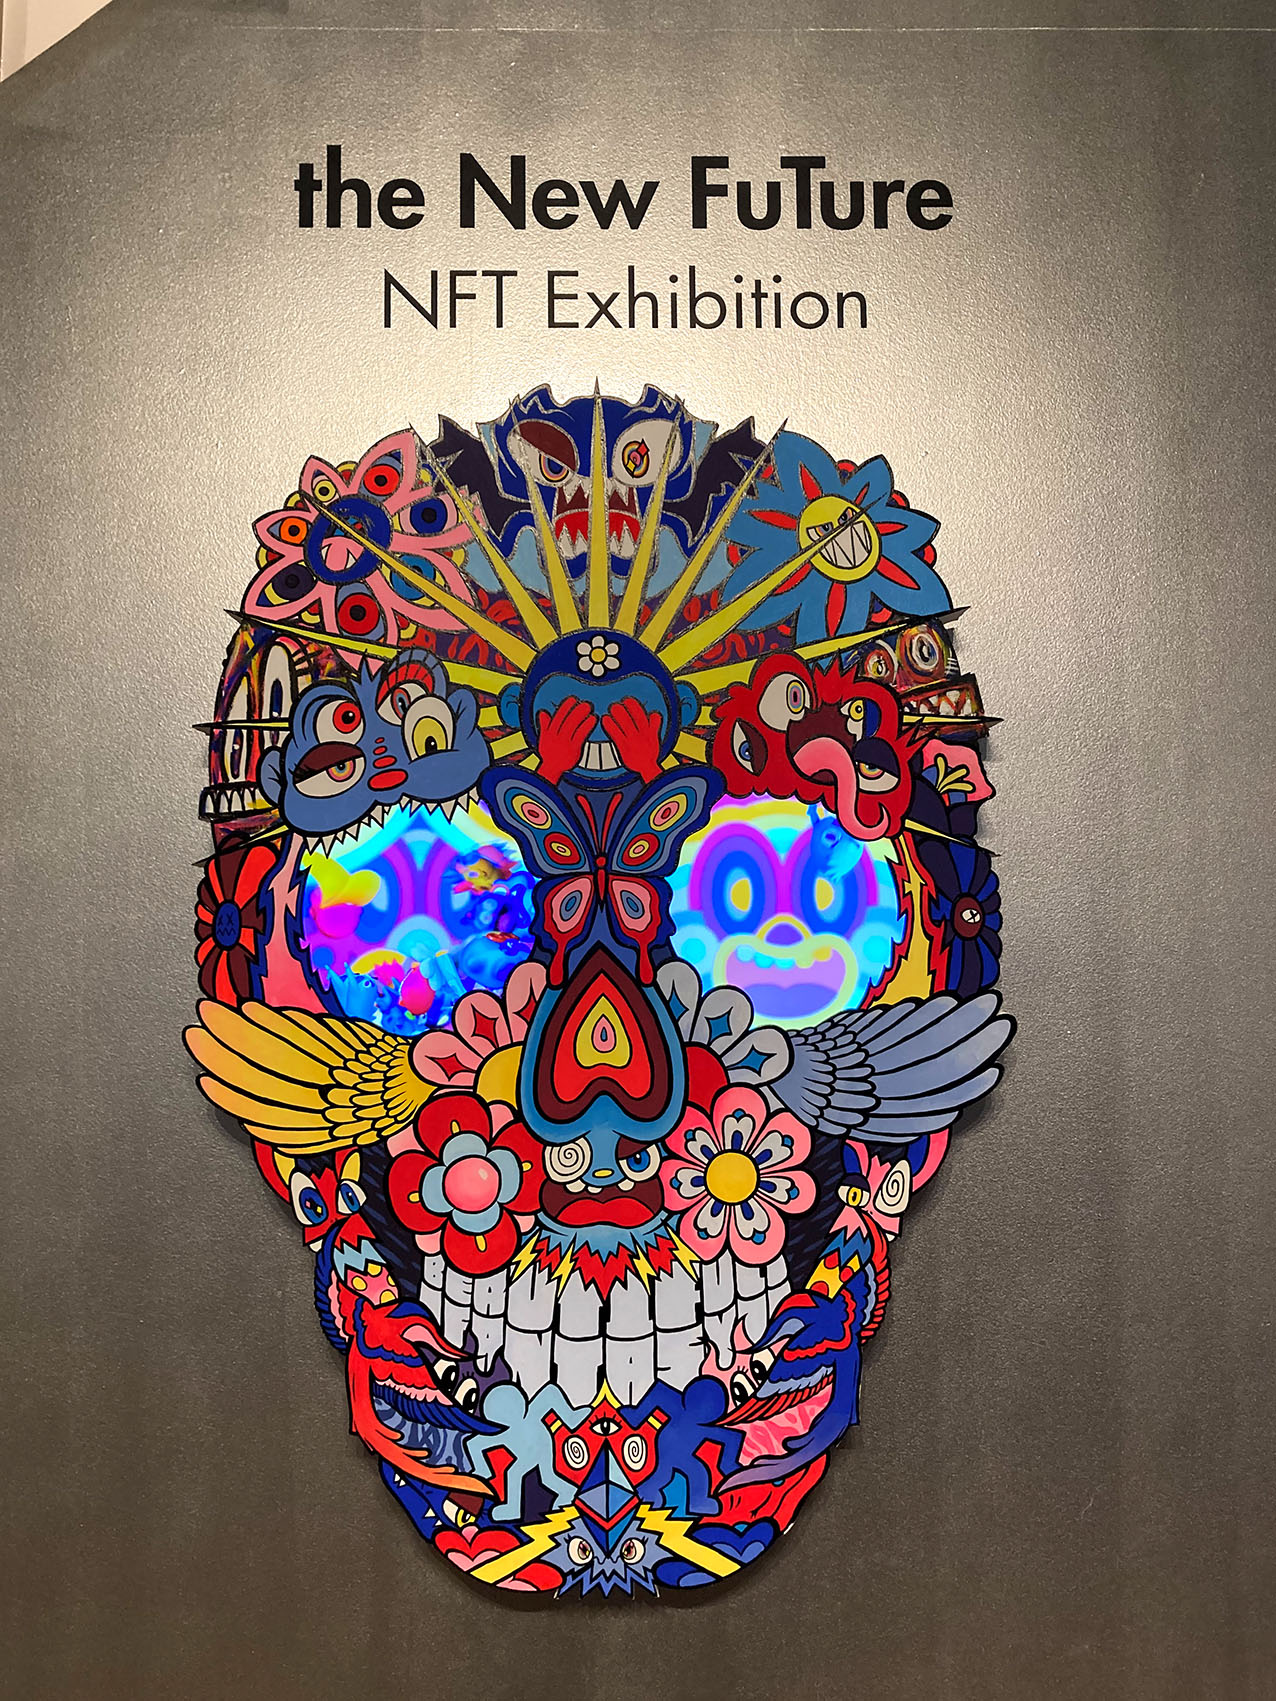 Poster, "the New FuTure" NFT Exhibition, darunter ein bunter Totenschädel